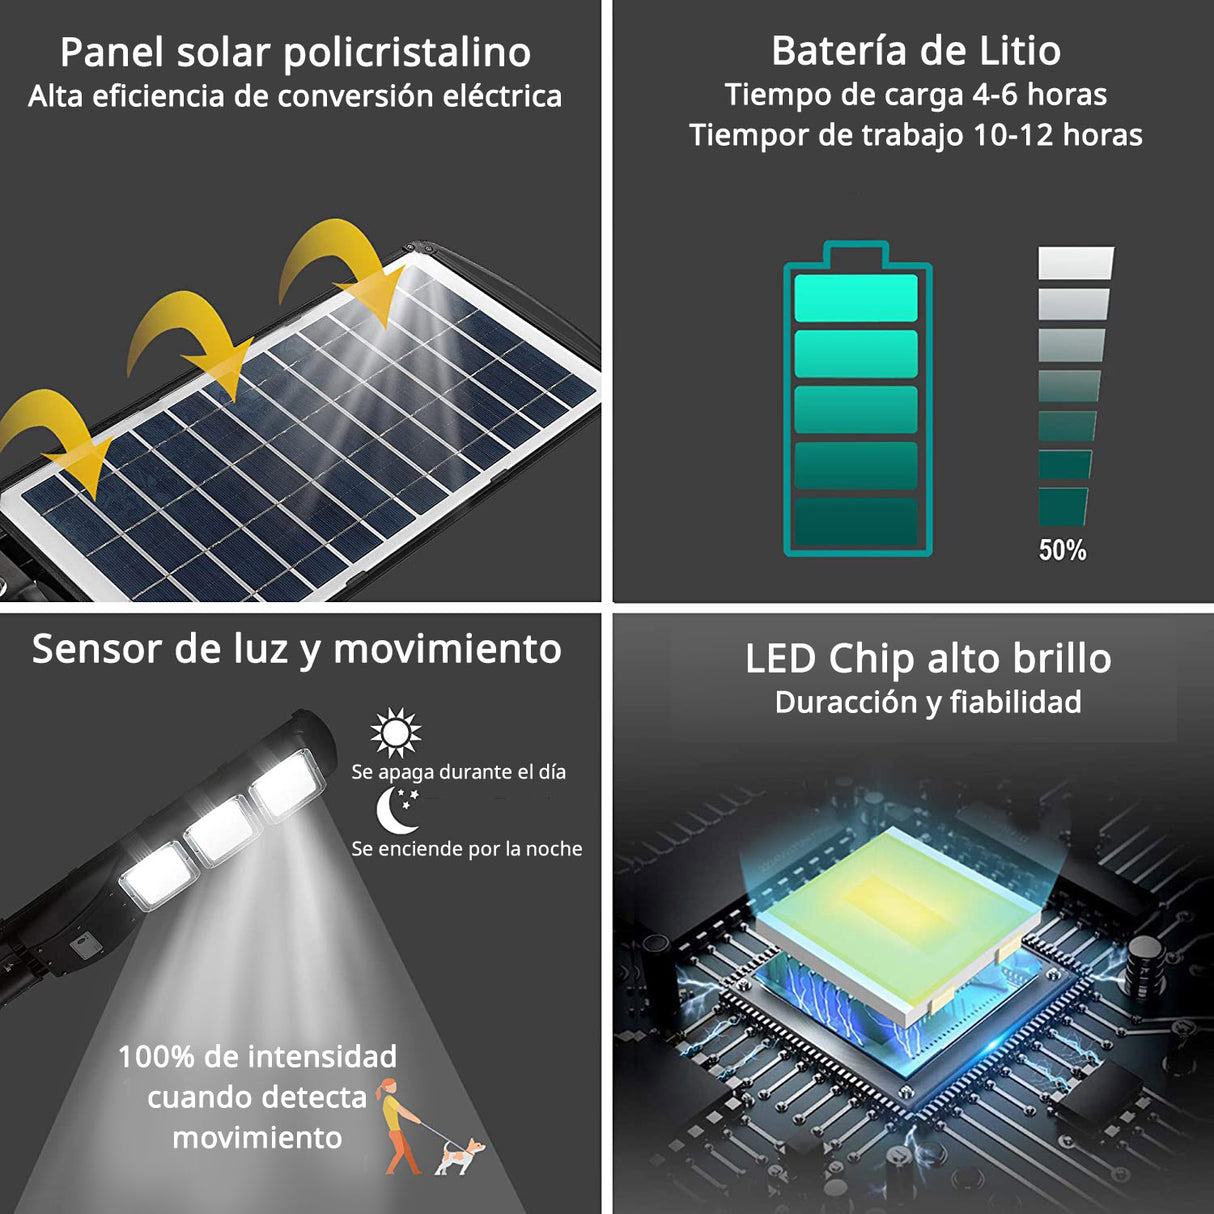 Farola LED que incorpora un sistema de alumbrado autónomo mediante energía solar. Incorpora sensor de luminosidad y movimiento.  Ideal para su instalación donde la red de energía eléctrica no puede llegar. 